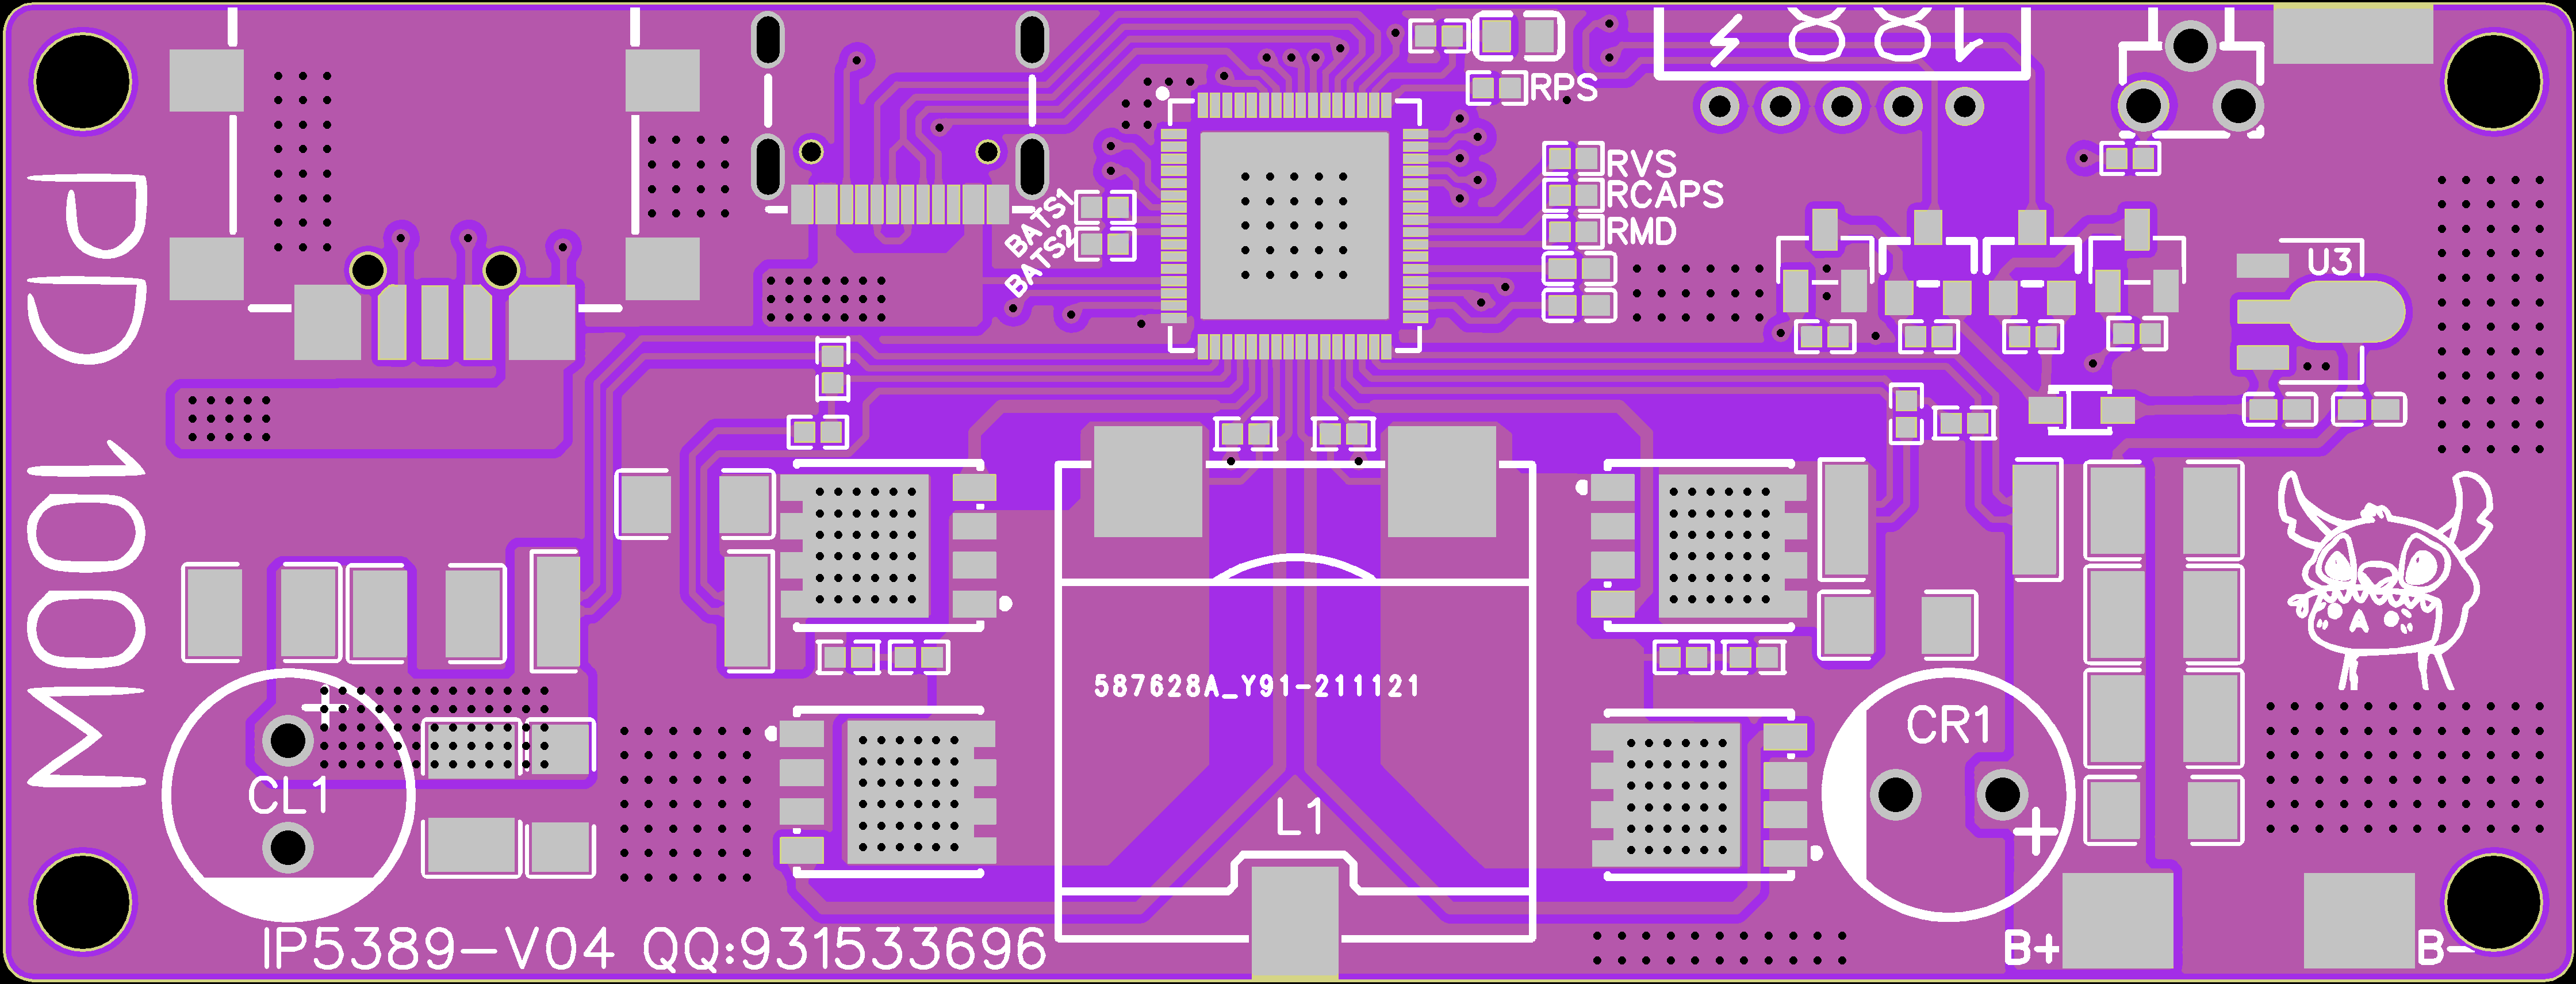 IP5389[100瓦双向快充移动电源]PCB设计原理图1